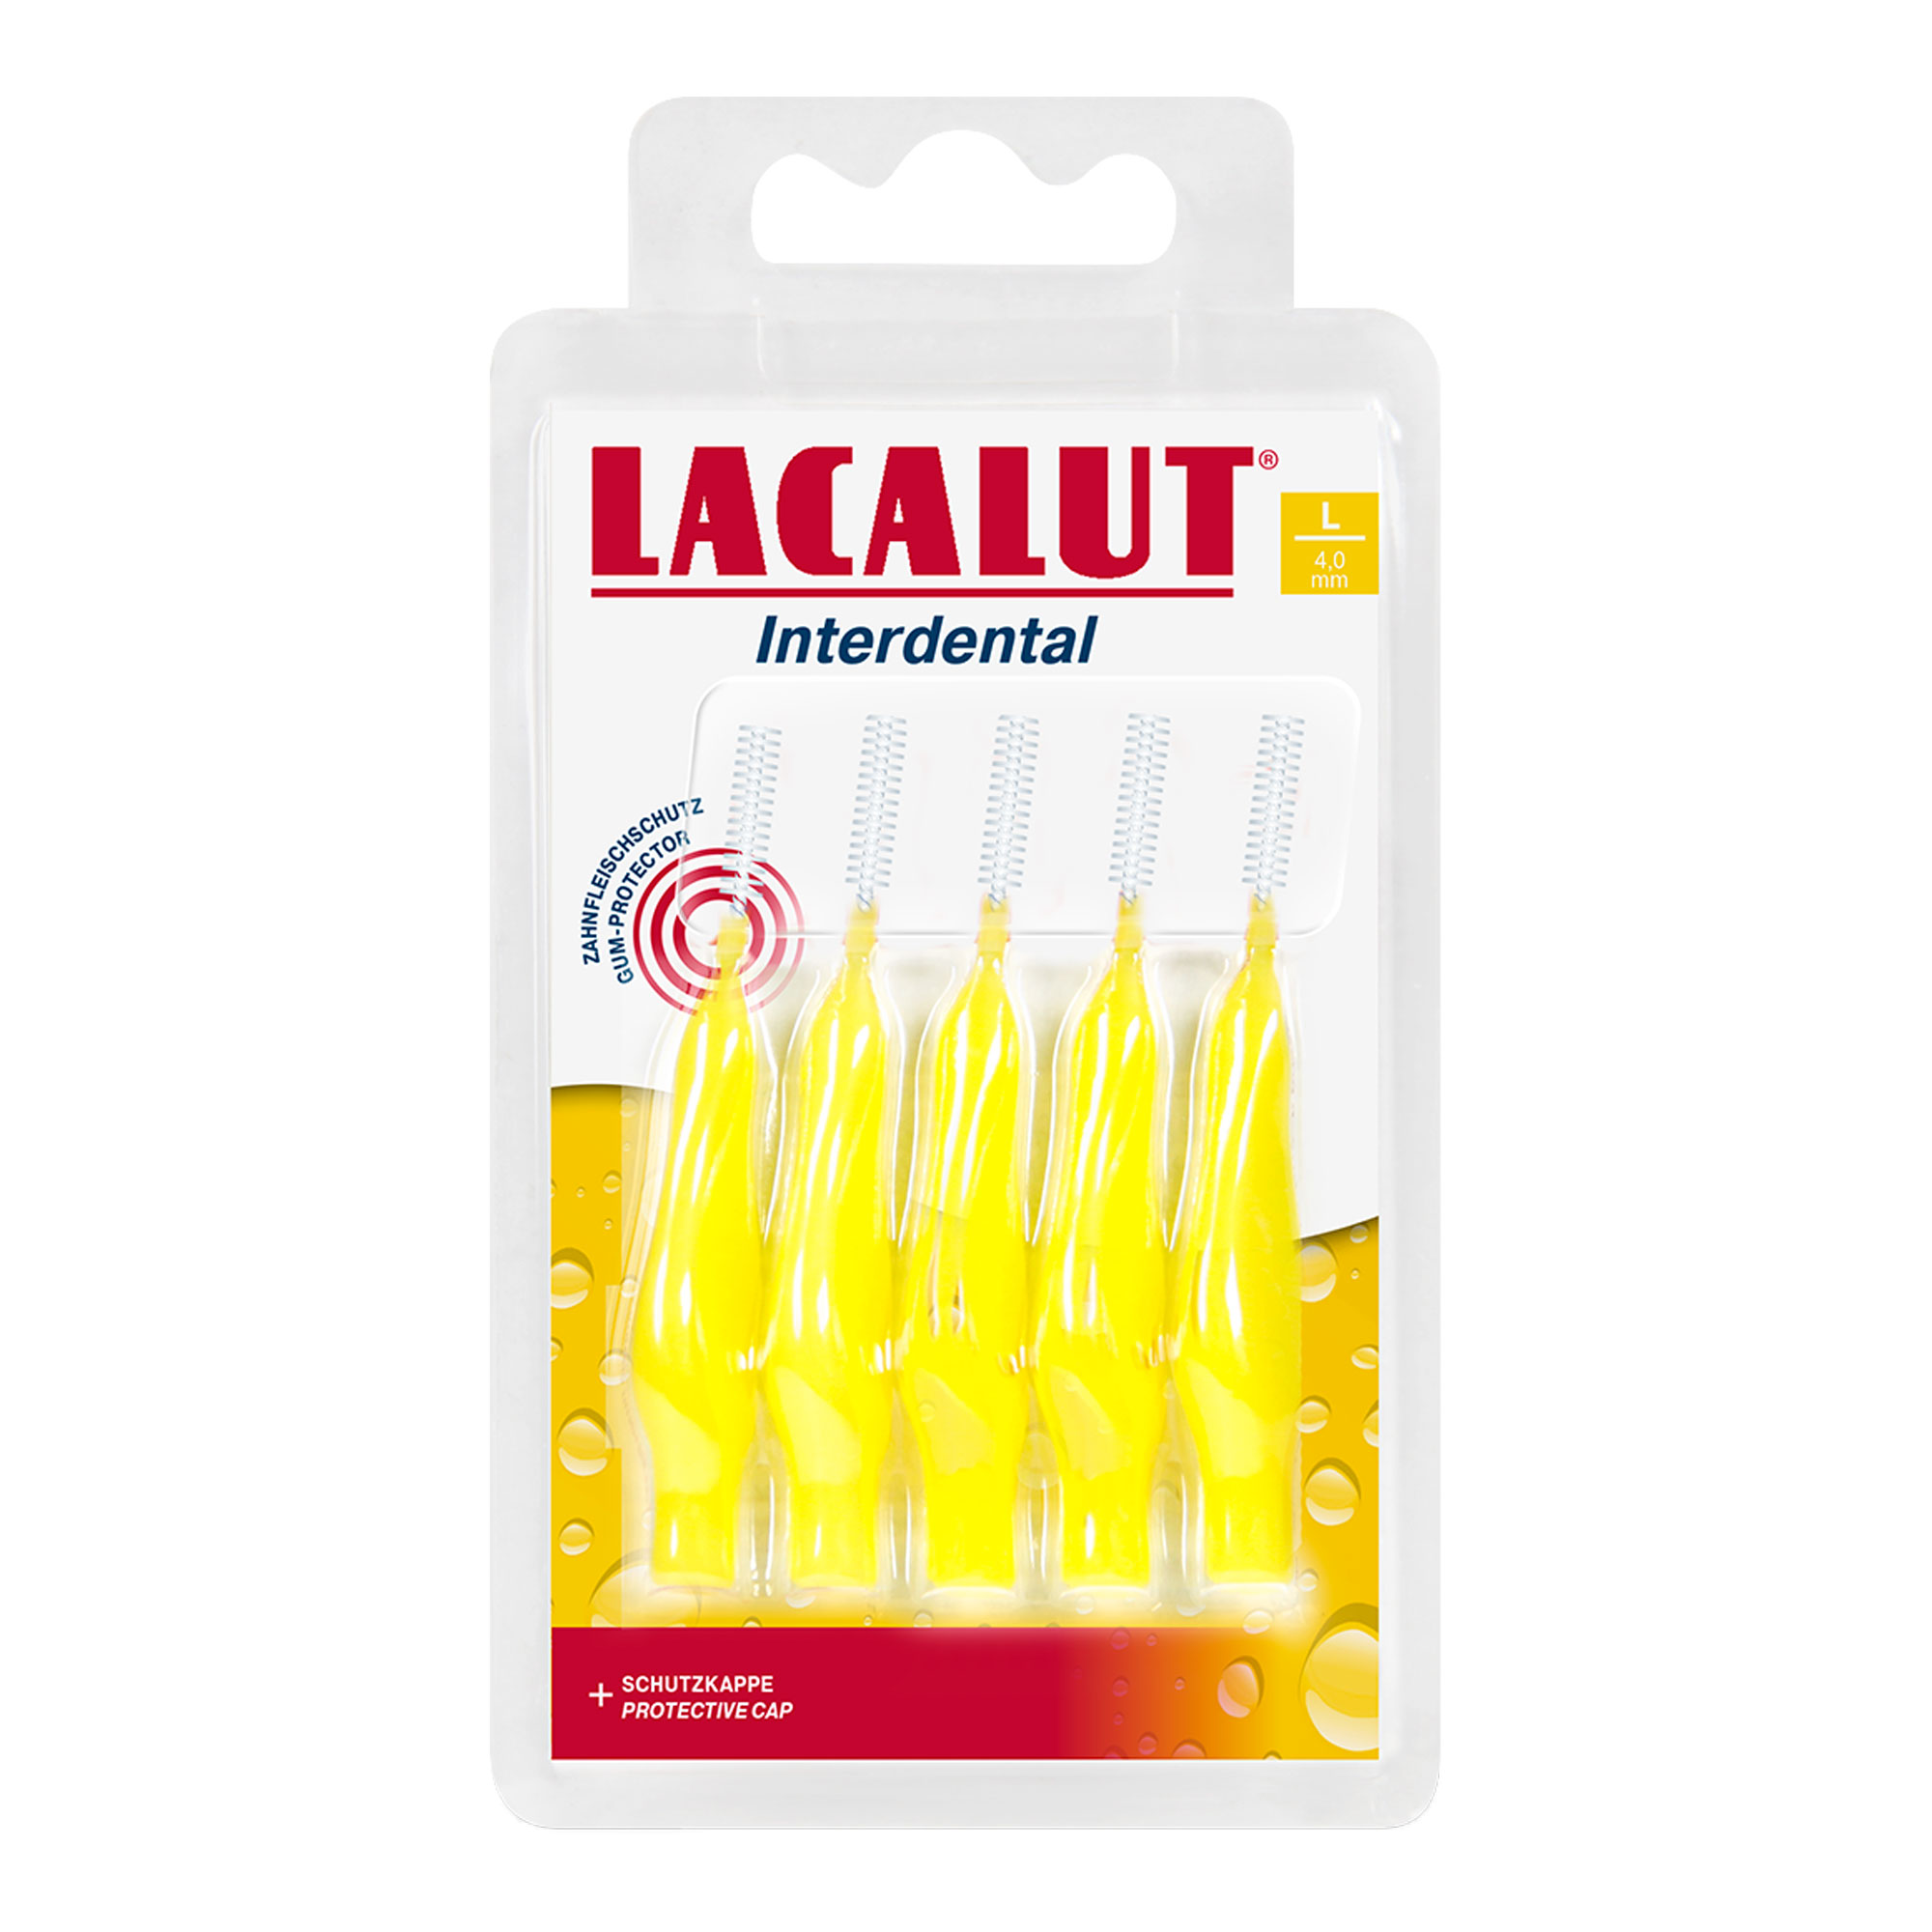 Lacalut Interdental ist besonders für die Reinigung von Zahnspangen und Prothesen geeignet.